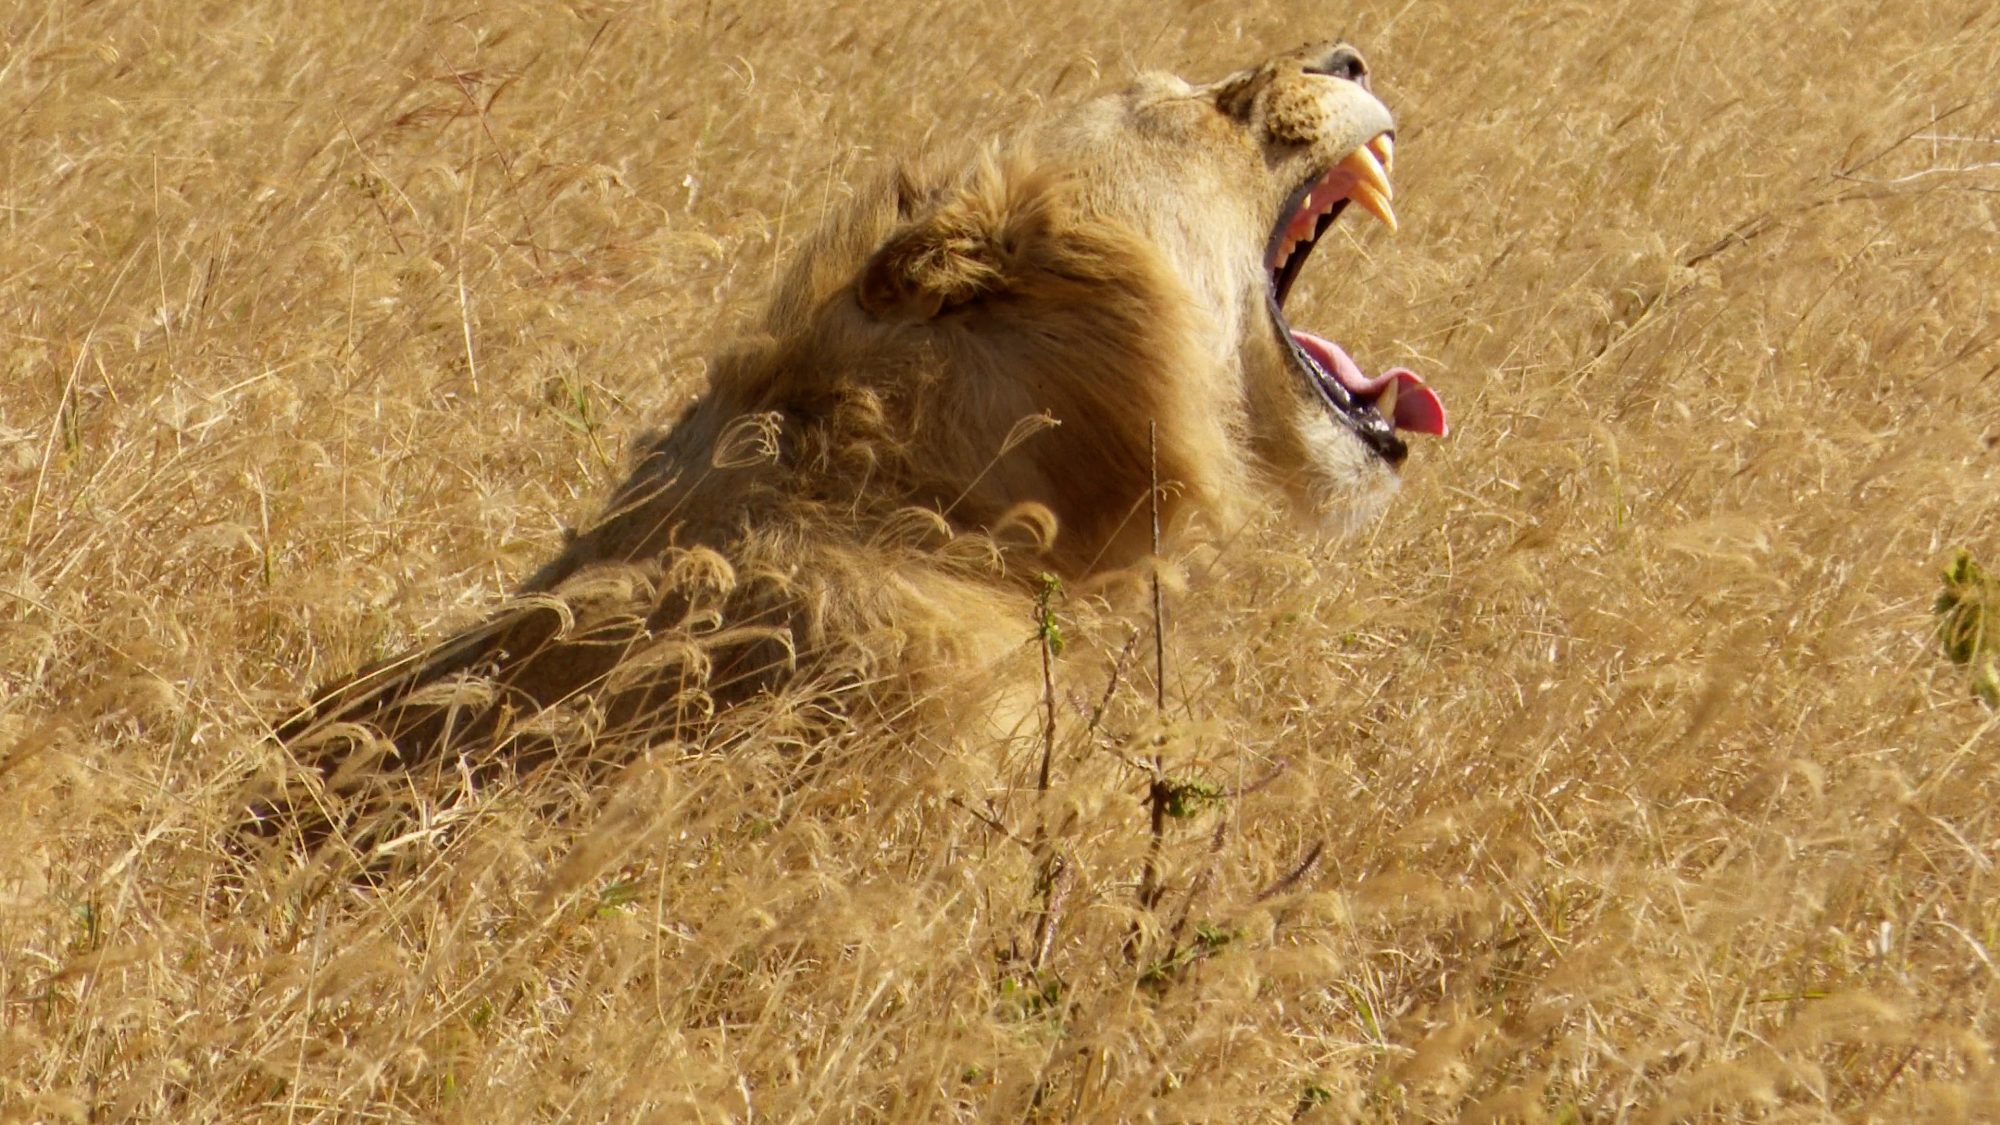 Lions in long grass – Tanzania, 2019